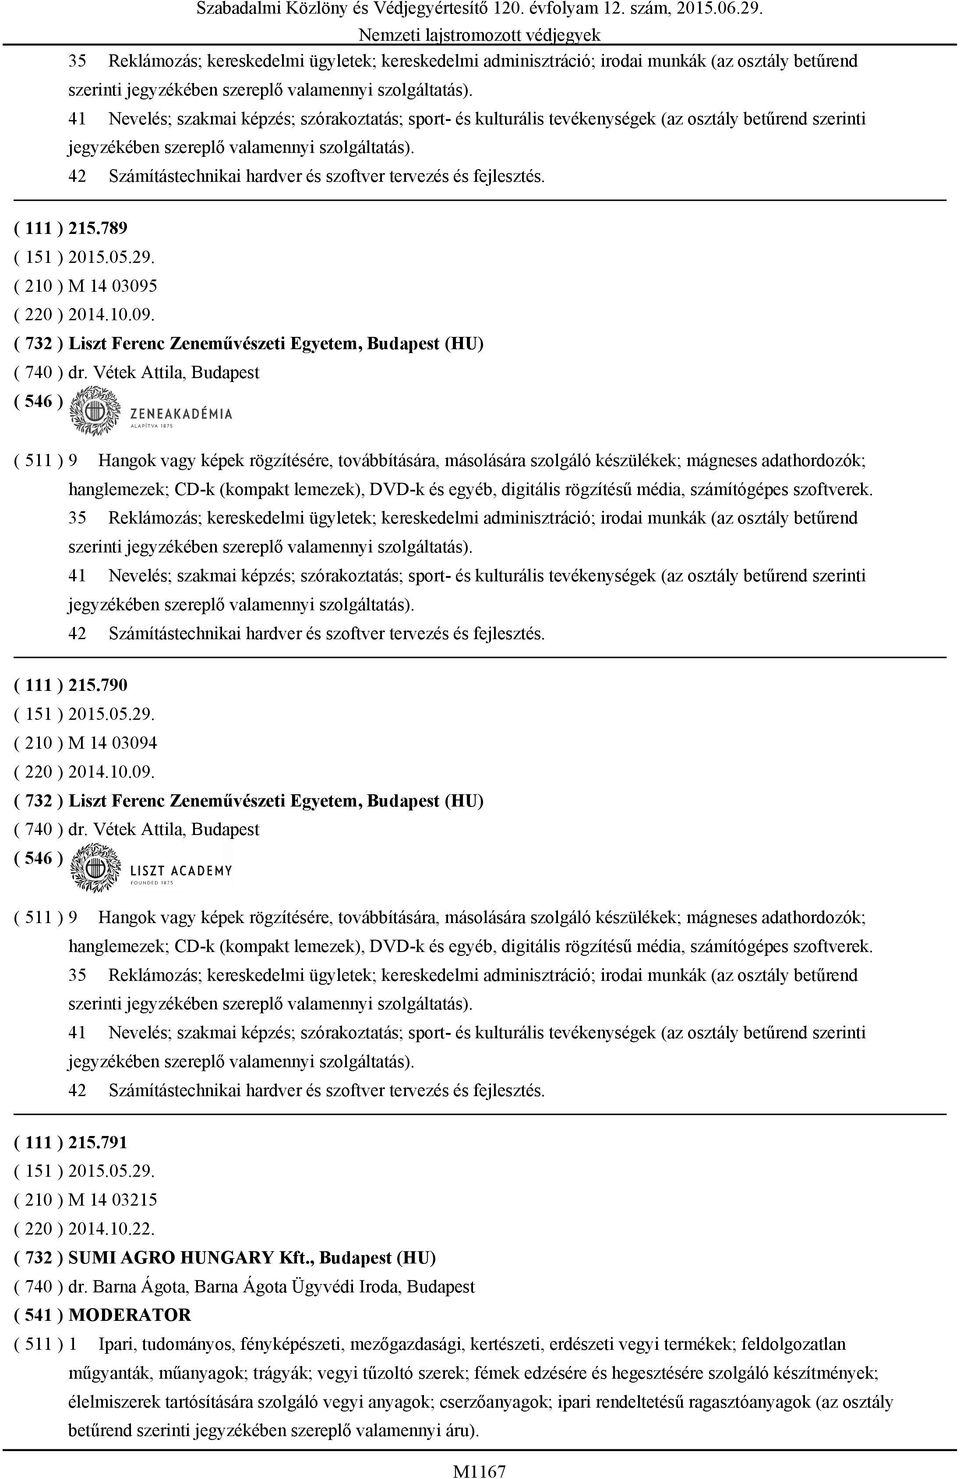 42 Számítástechnikai hardver és szoftver tervezés és fejlesztés. ( 111 ) 215.789 ( 210 ) M 14 03095 ( 220 ) 2014.10.09. ( 732 ) Liszt Ferenc Zeneművészeti Egyetem, Budapest (HU) ( 740 ) dr.